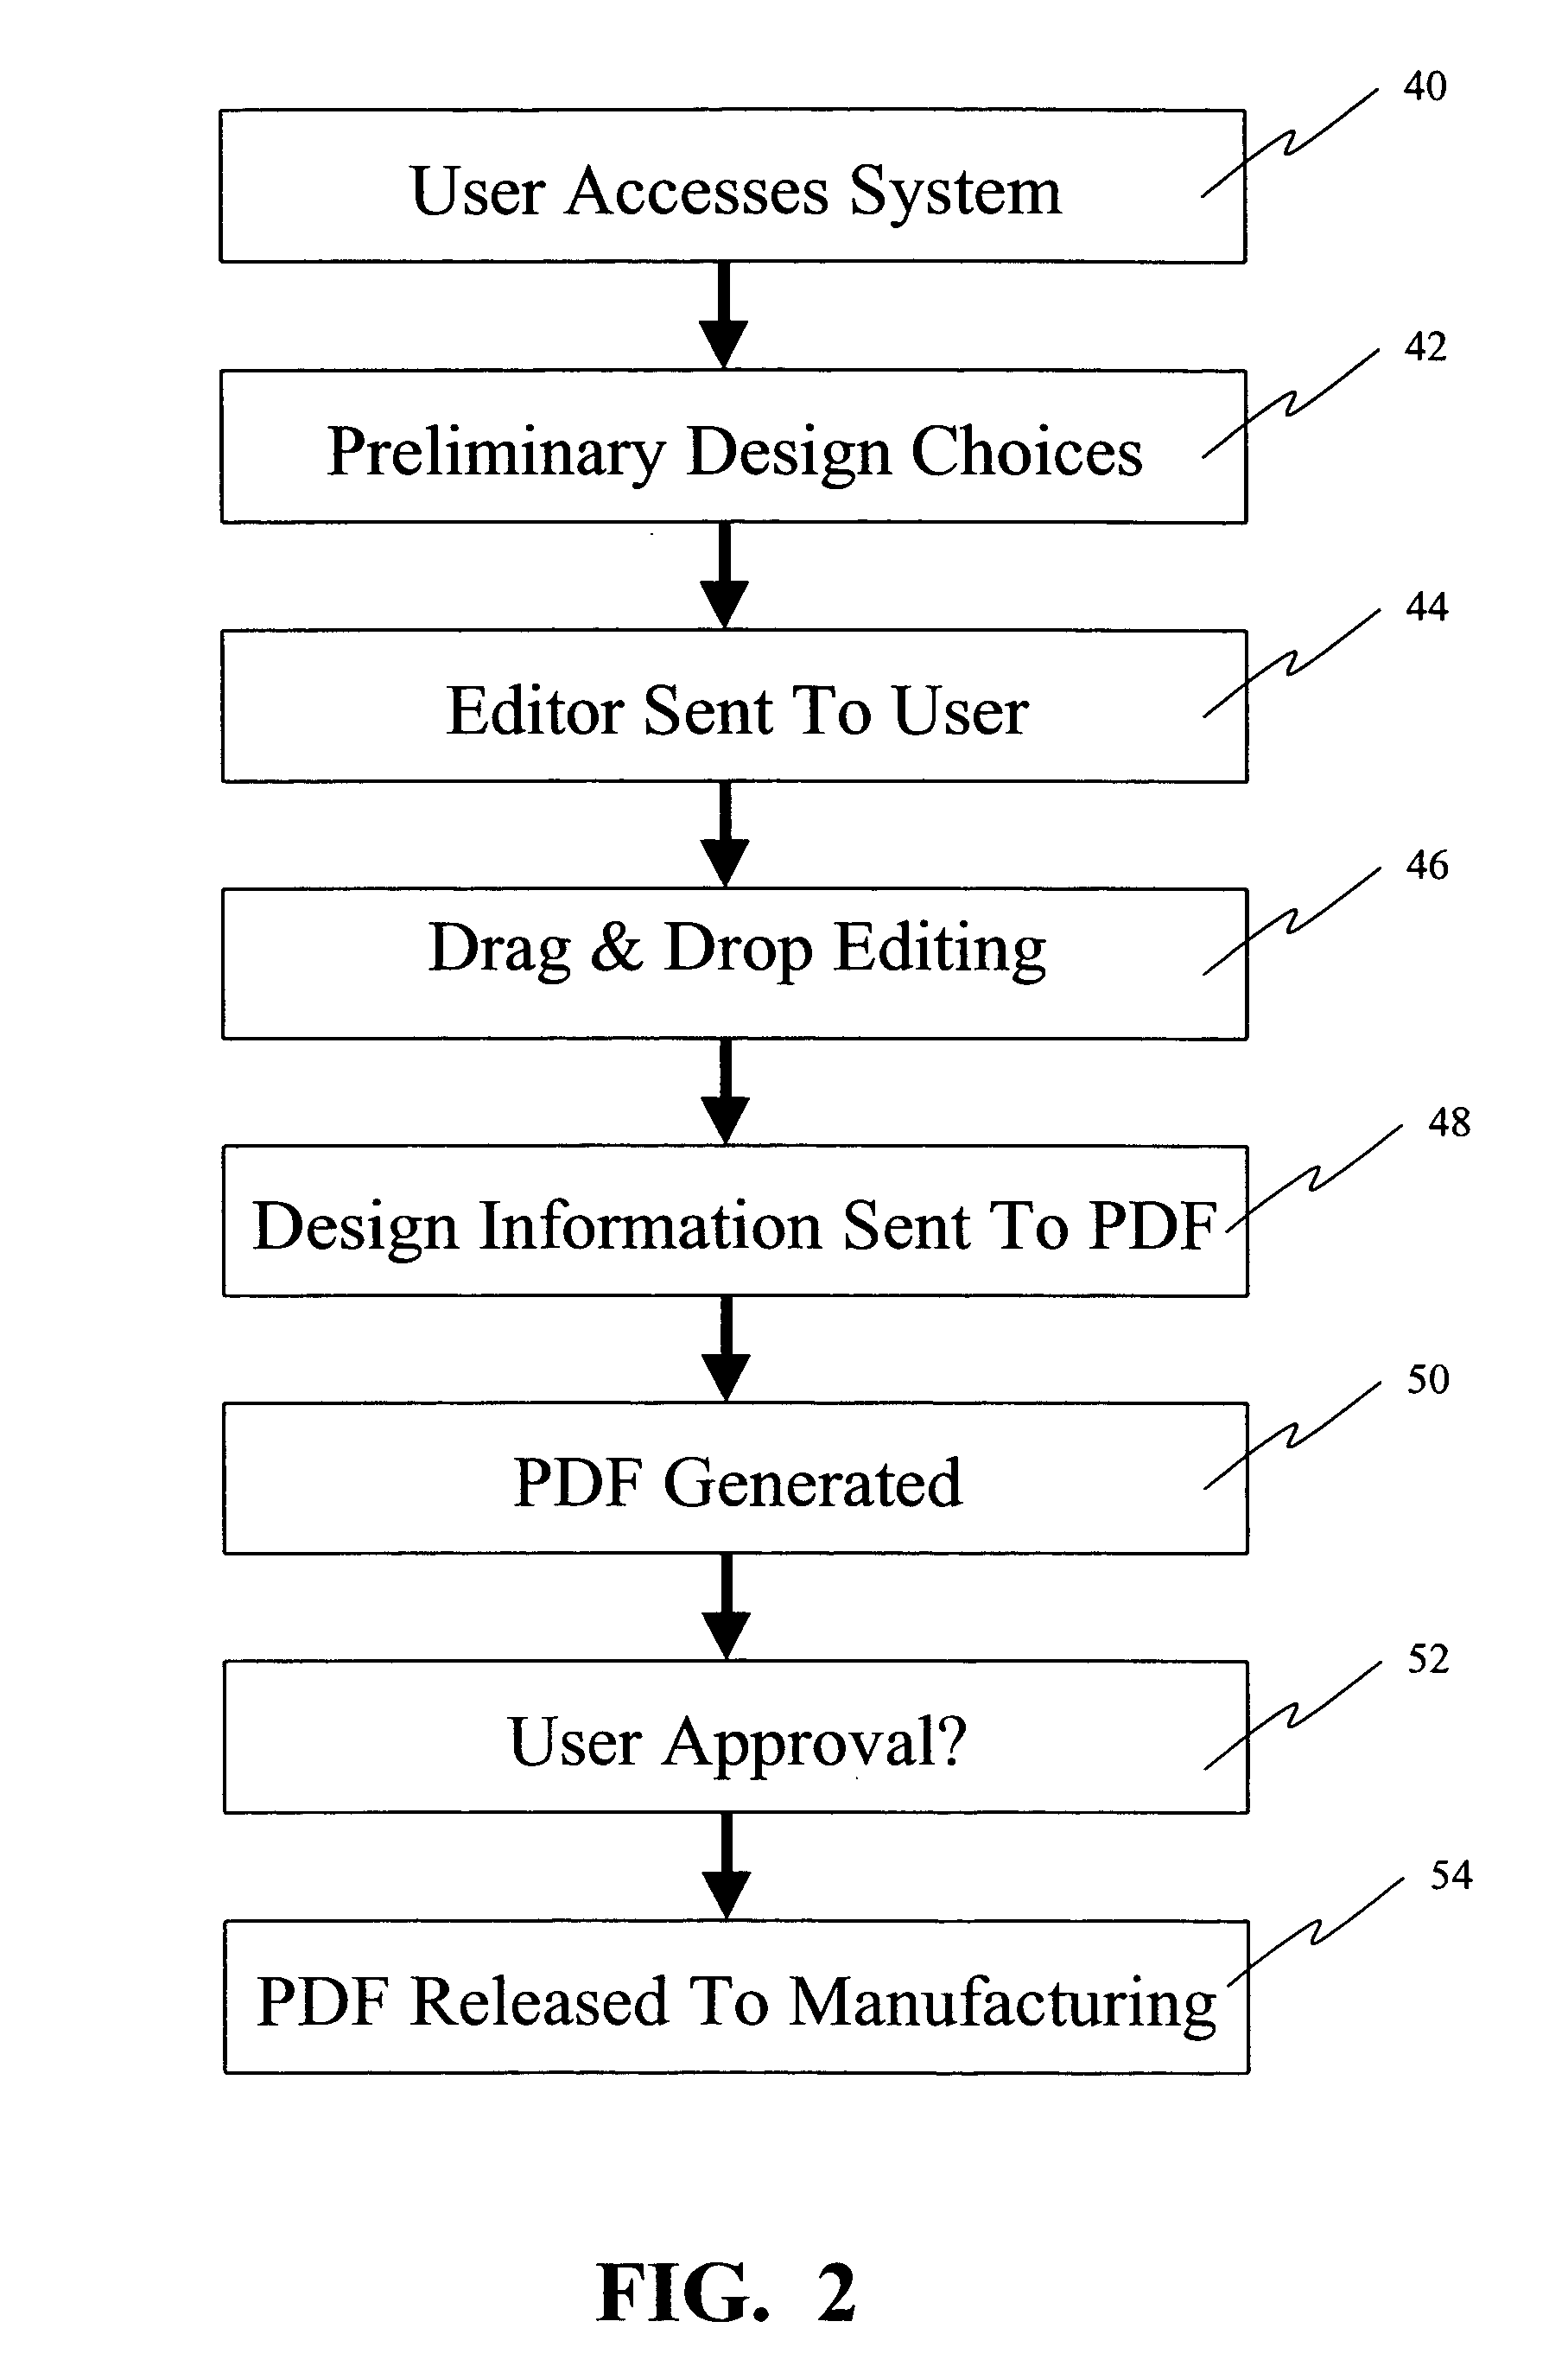 Web-based design system